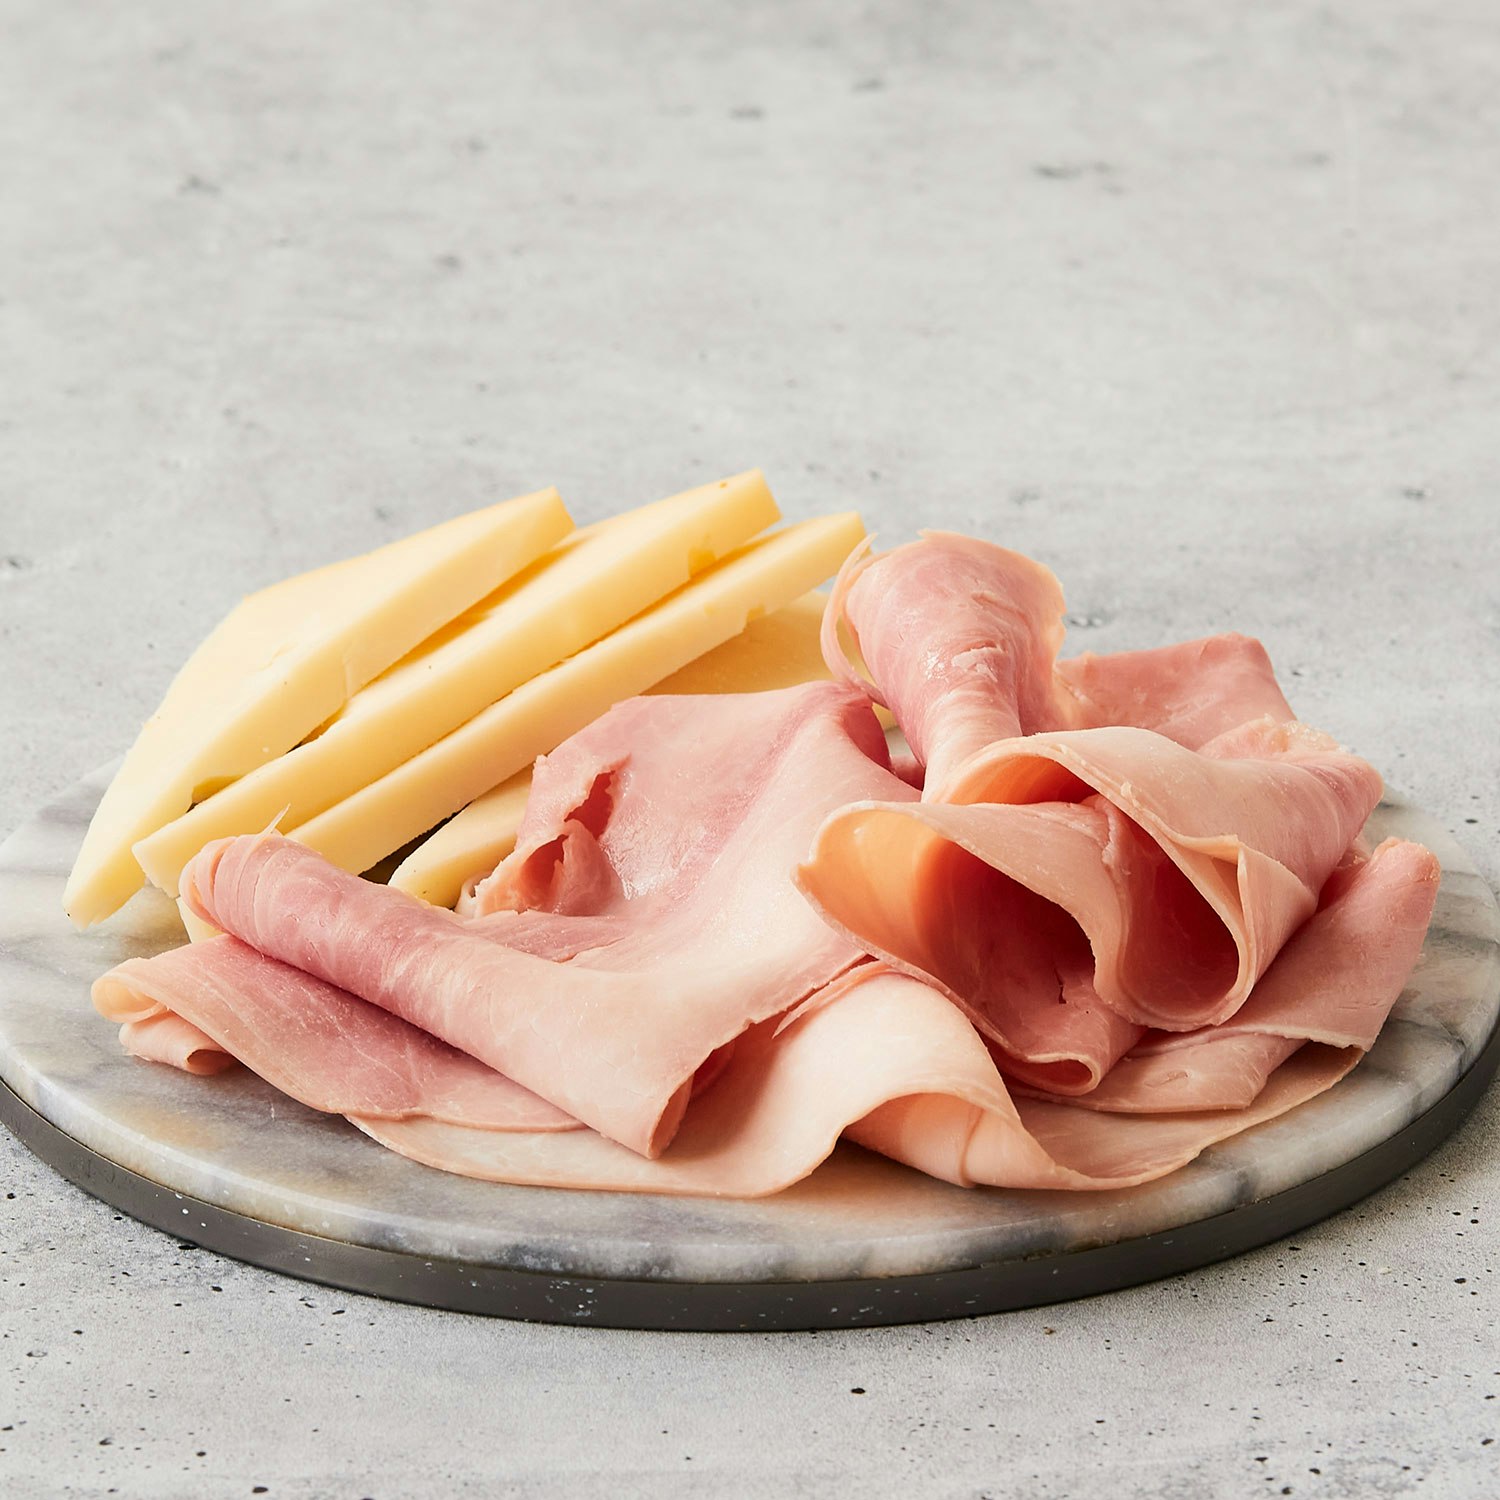 Rovagnati Sliced Prosciutto Cotto meats